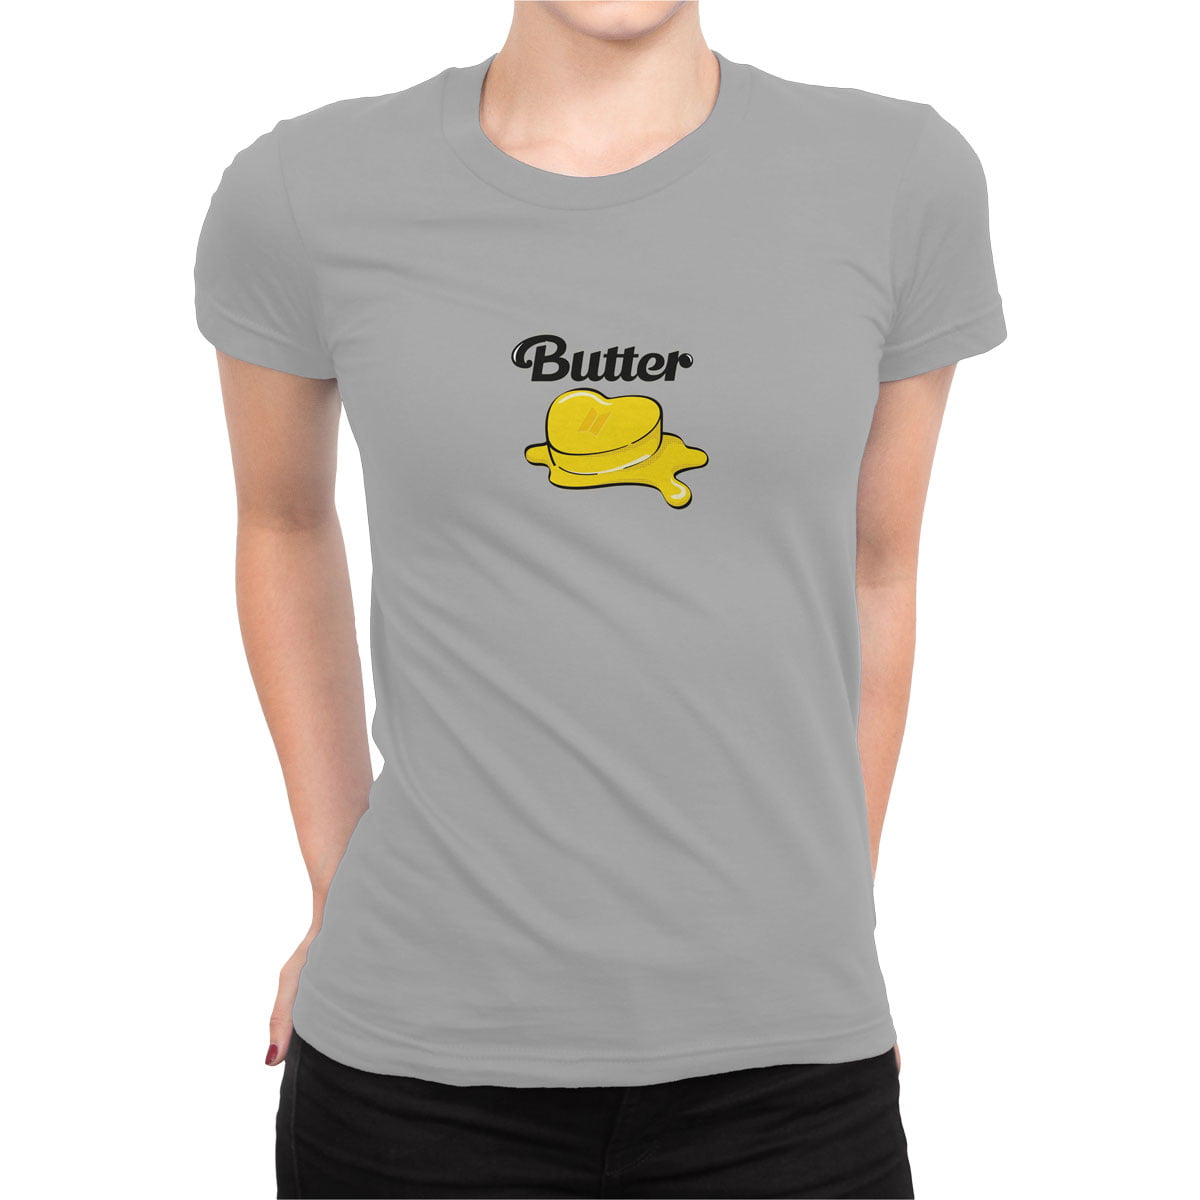 Bts logo butter tisort kadin g - bts butter kadın t-shirt - figurex